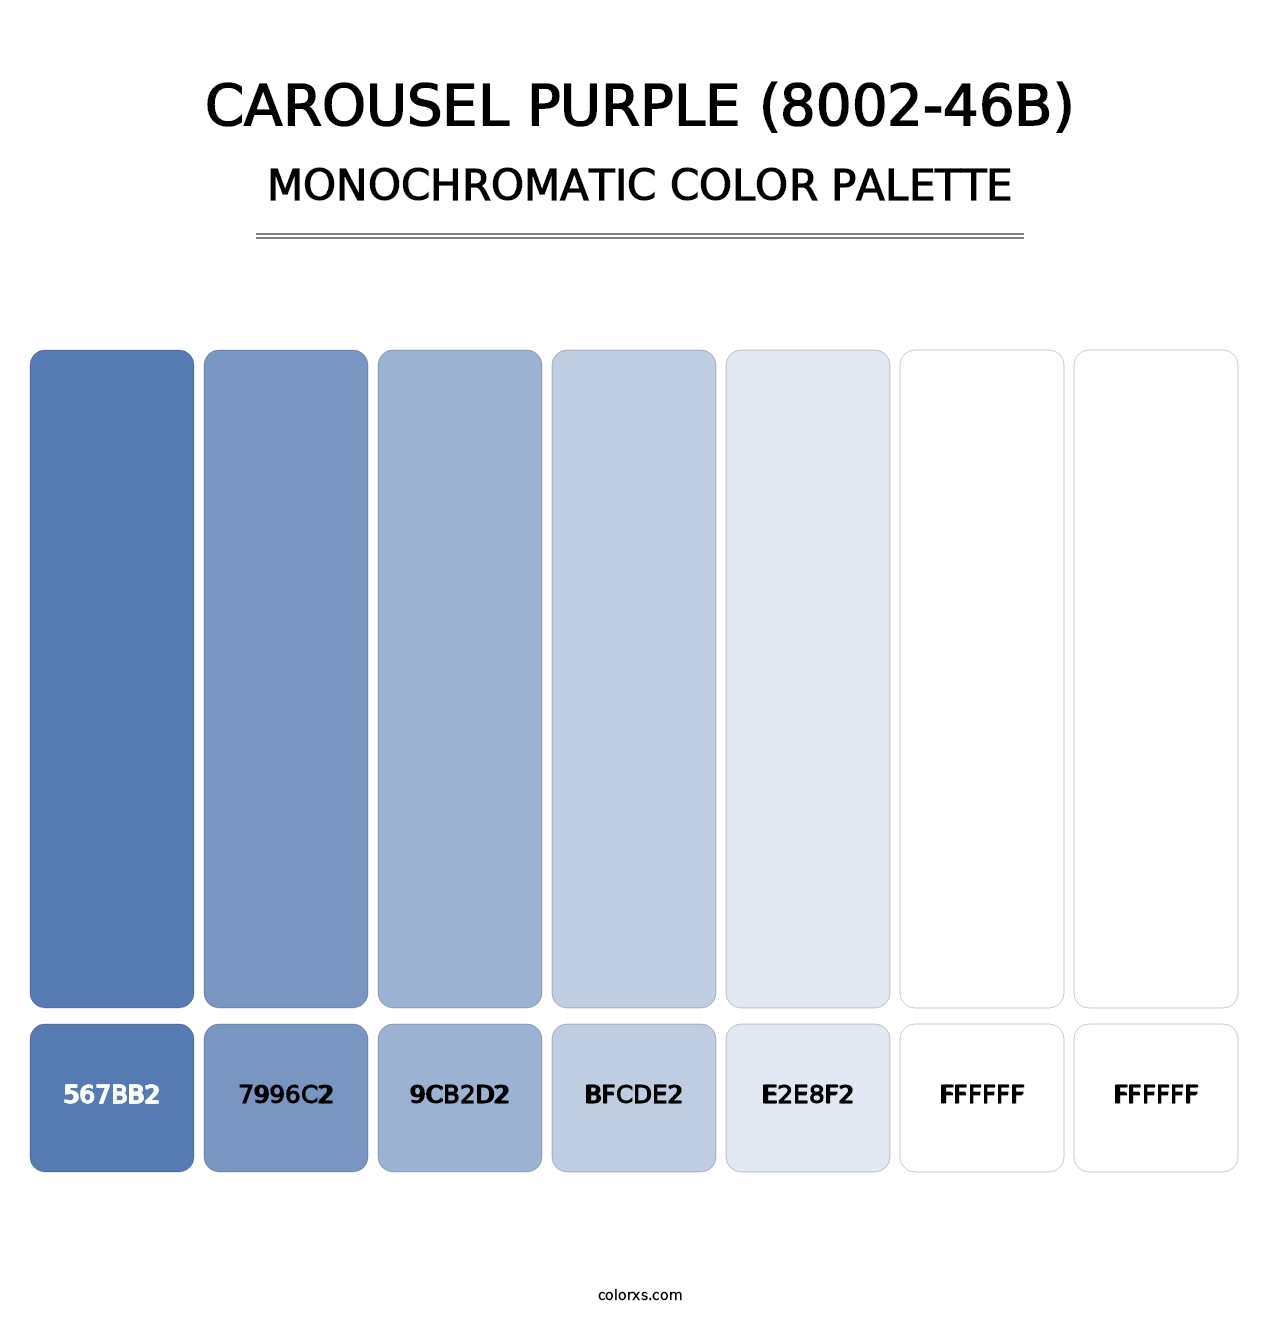 Carousel Purple (8002-46B) - Monochromatic Color Palette